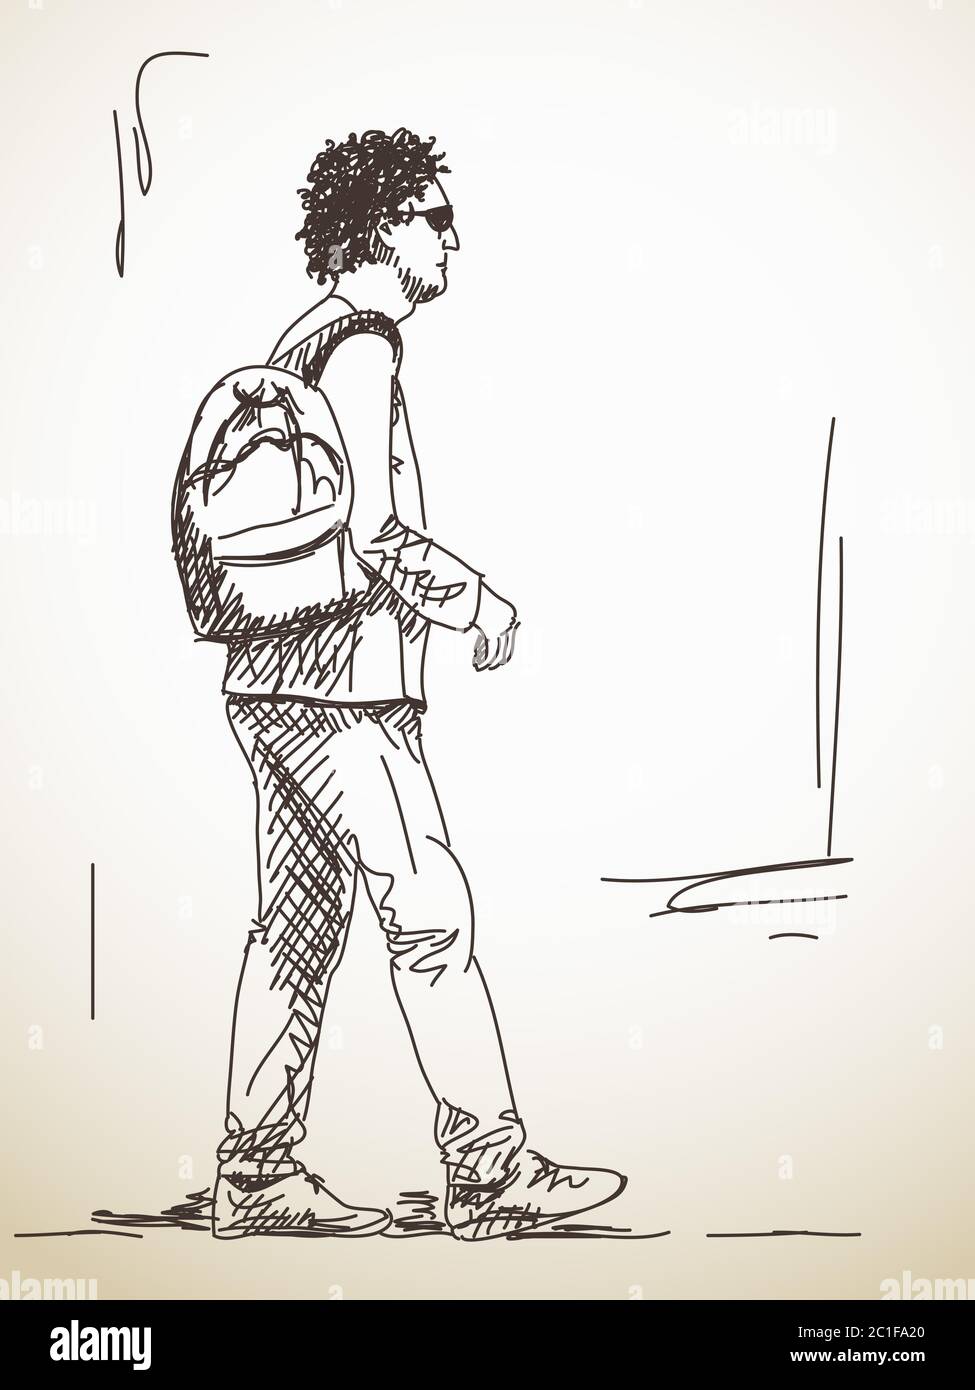 Sketch of walking man Stock Vector by ©OlgaTropinina 90474798